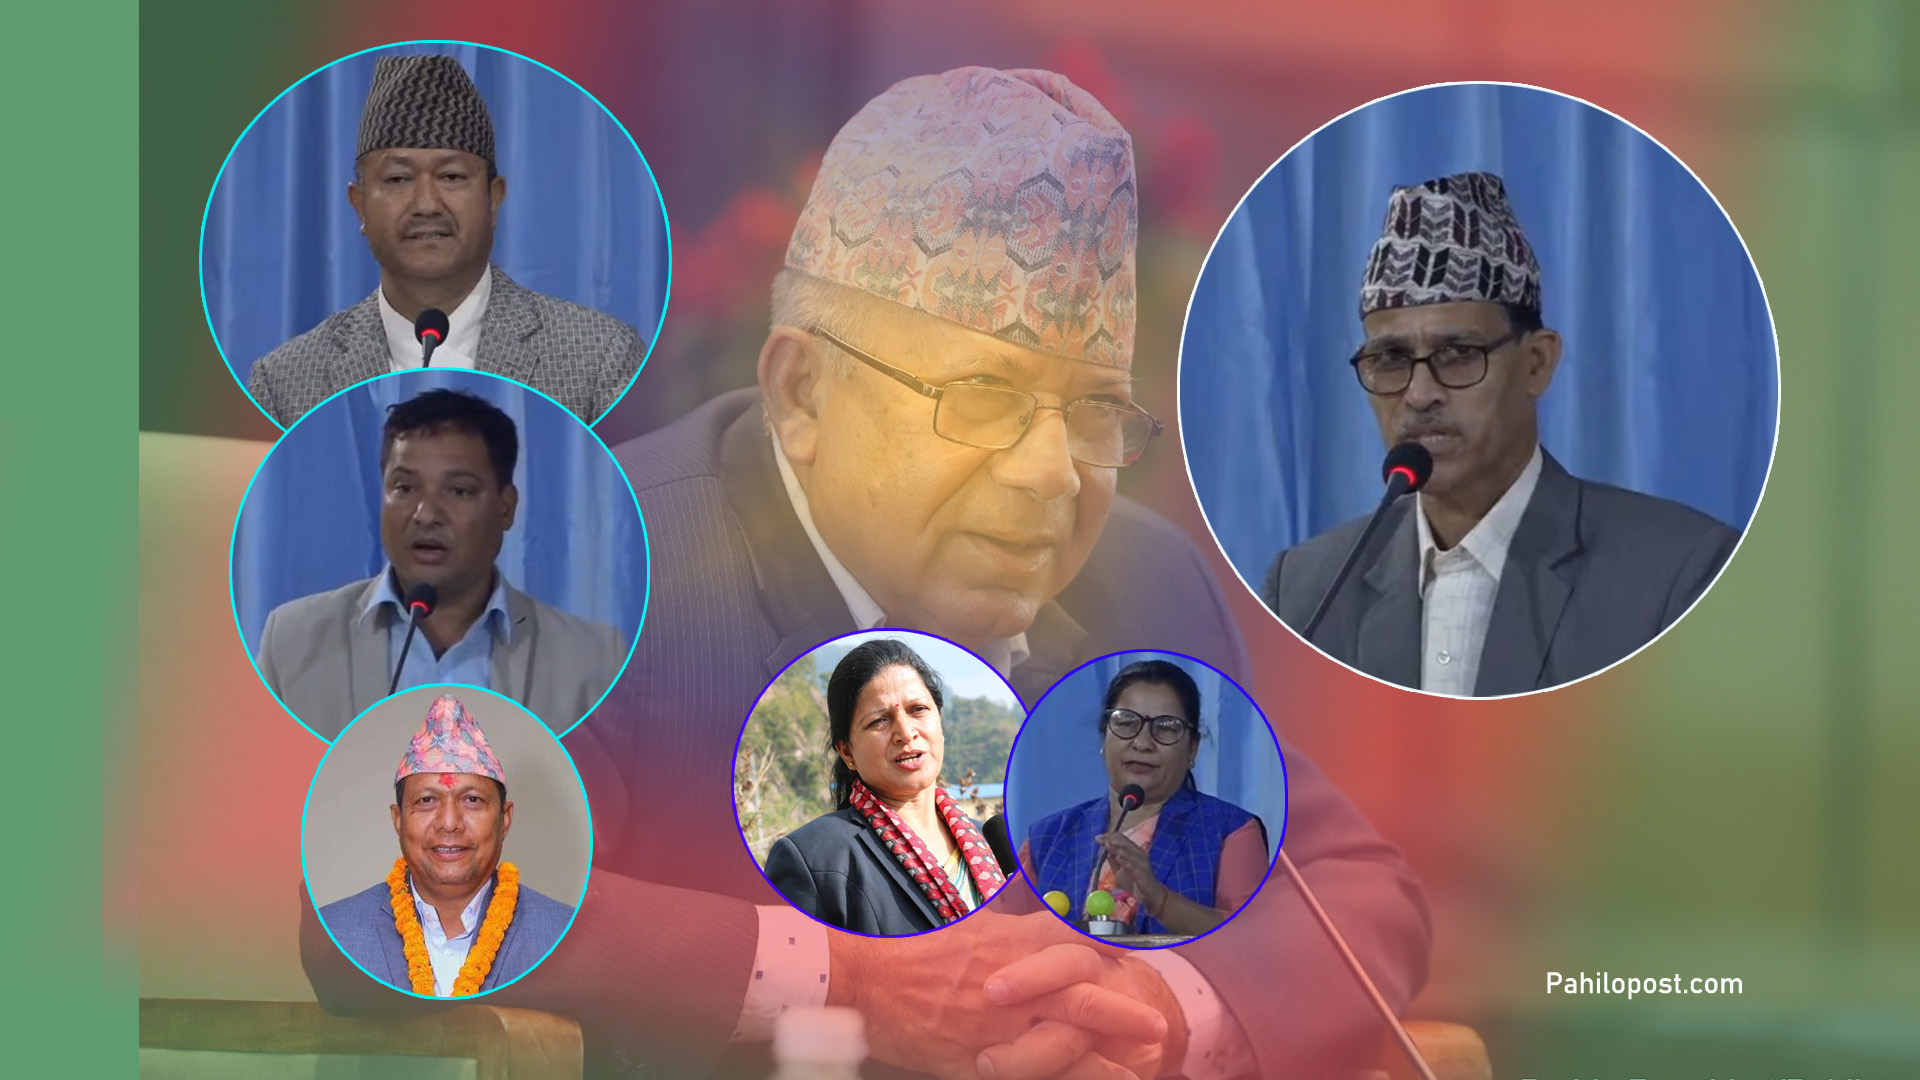 सुदूरपश्चिममा माधव नेपाल समूह एकाएक कमजोर, सरकार फेरबदल भए पनि ओली पक्ष सत्ता बाहिरै